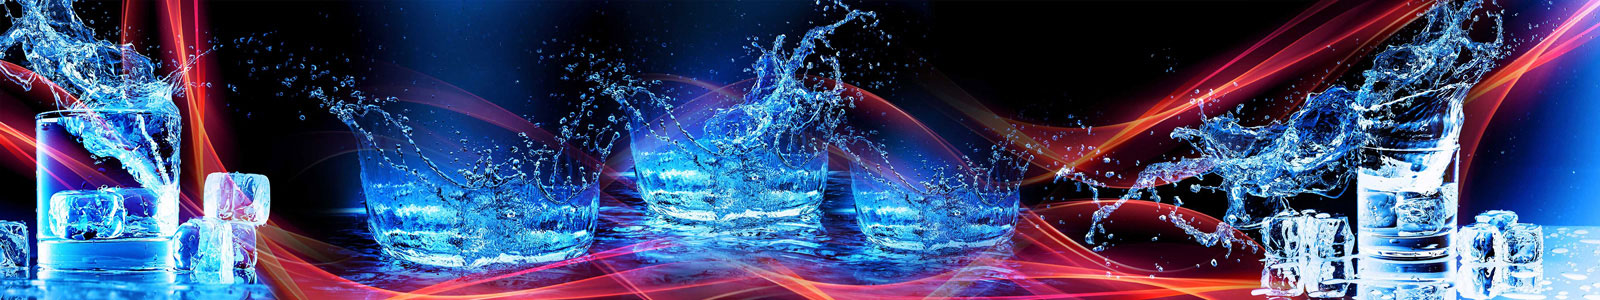 №5553 - Светящиеся вода, брызги и лед в стакане на огненно-абстрактном фоне